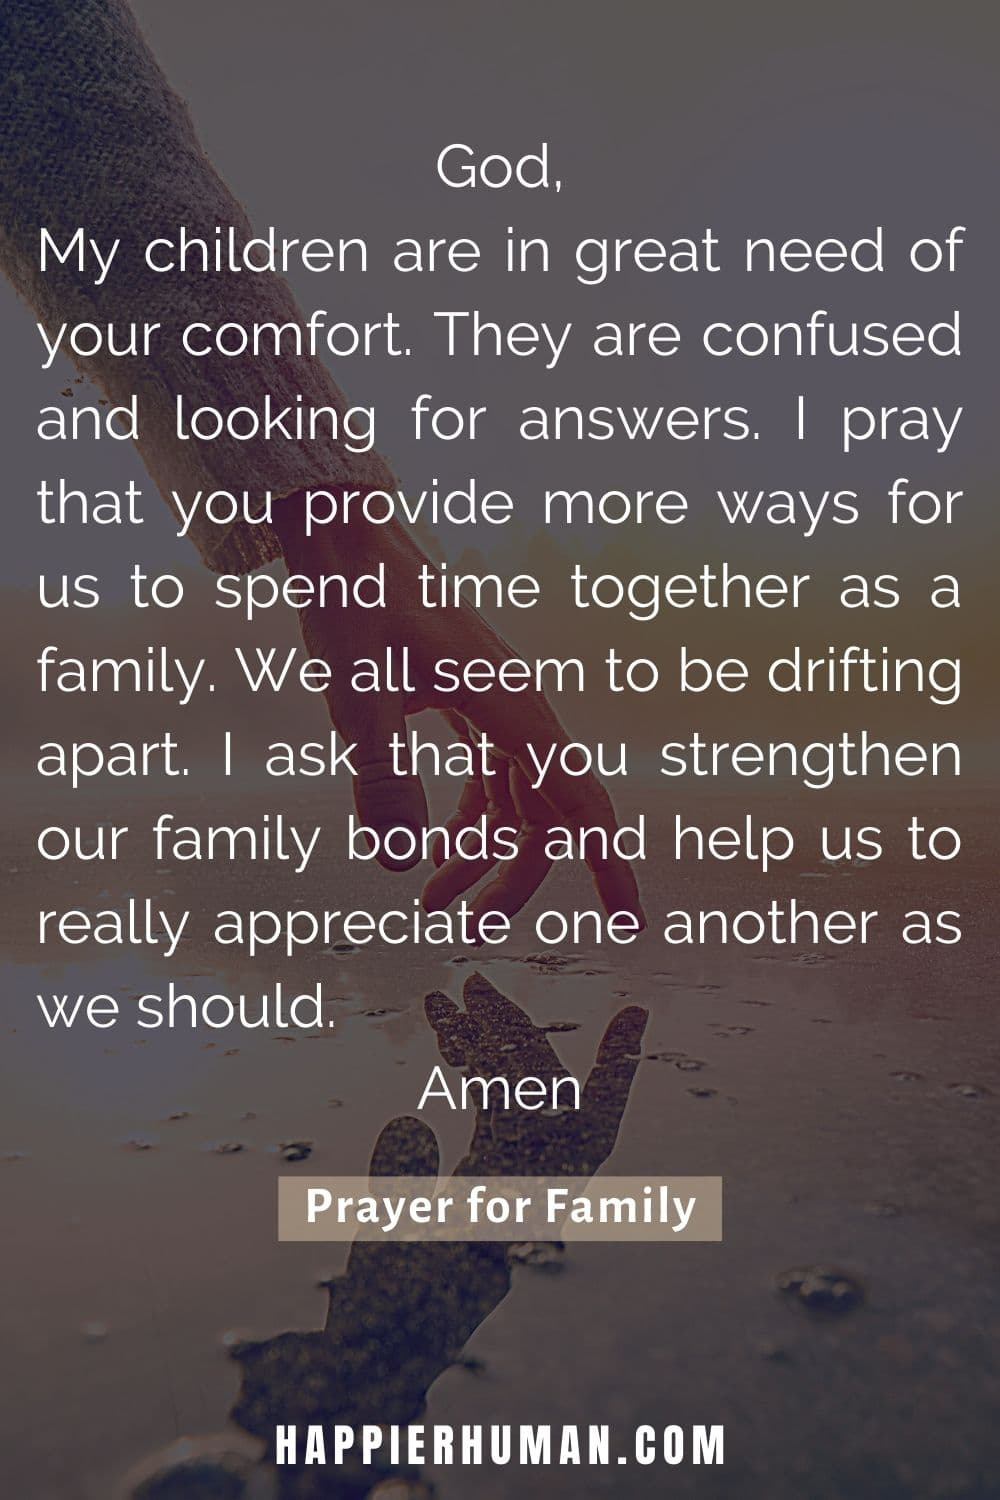 21 prières pour votre famille dans les moments difficiles - Romantikes